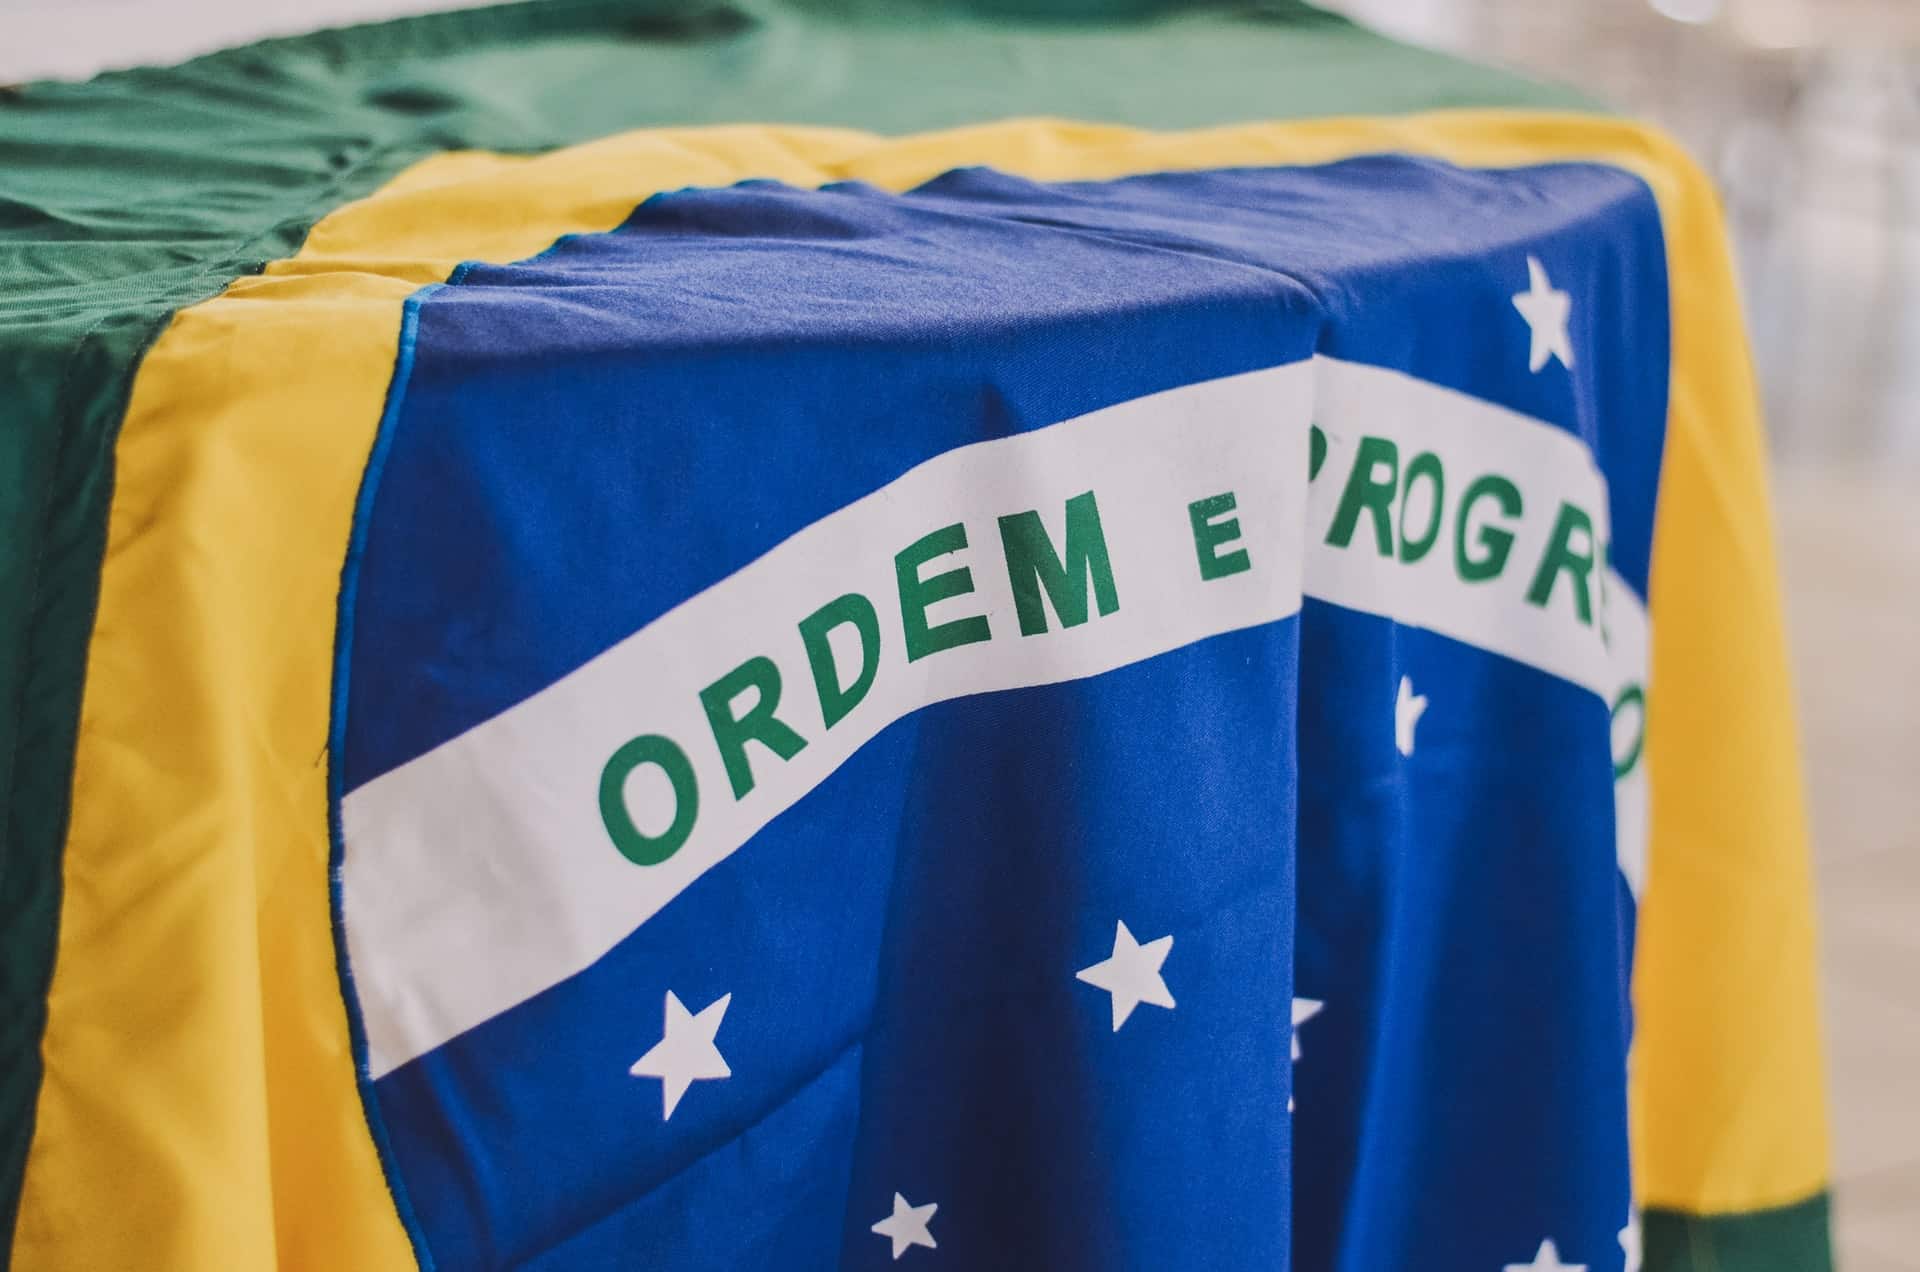 Bicentenário da Independência do Brasil: o que mudou para os brasileiros? Trocamos seis por meia dúzia?